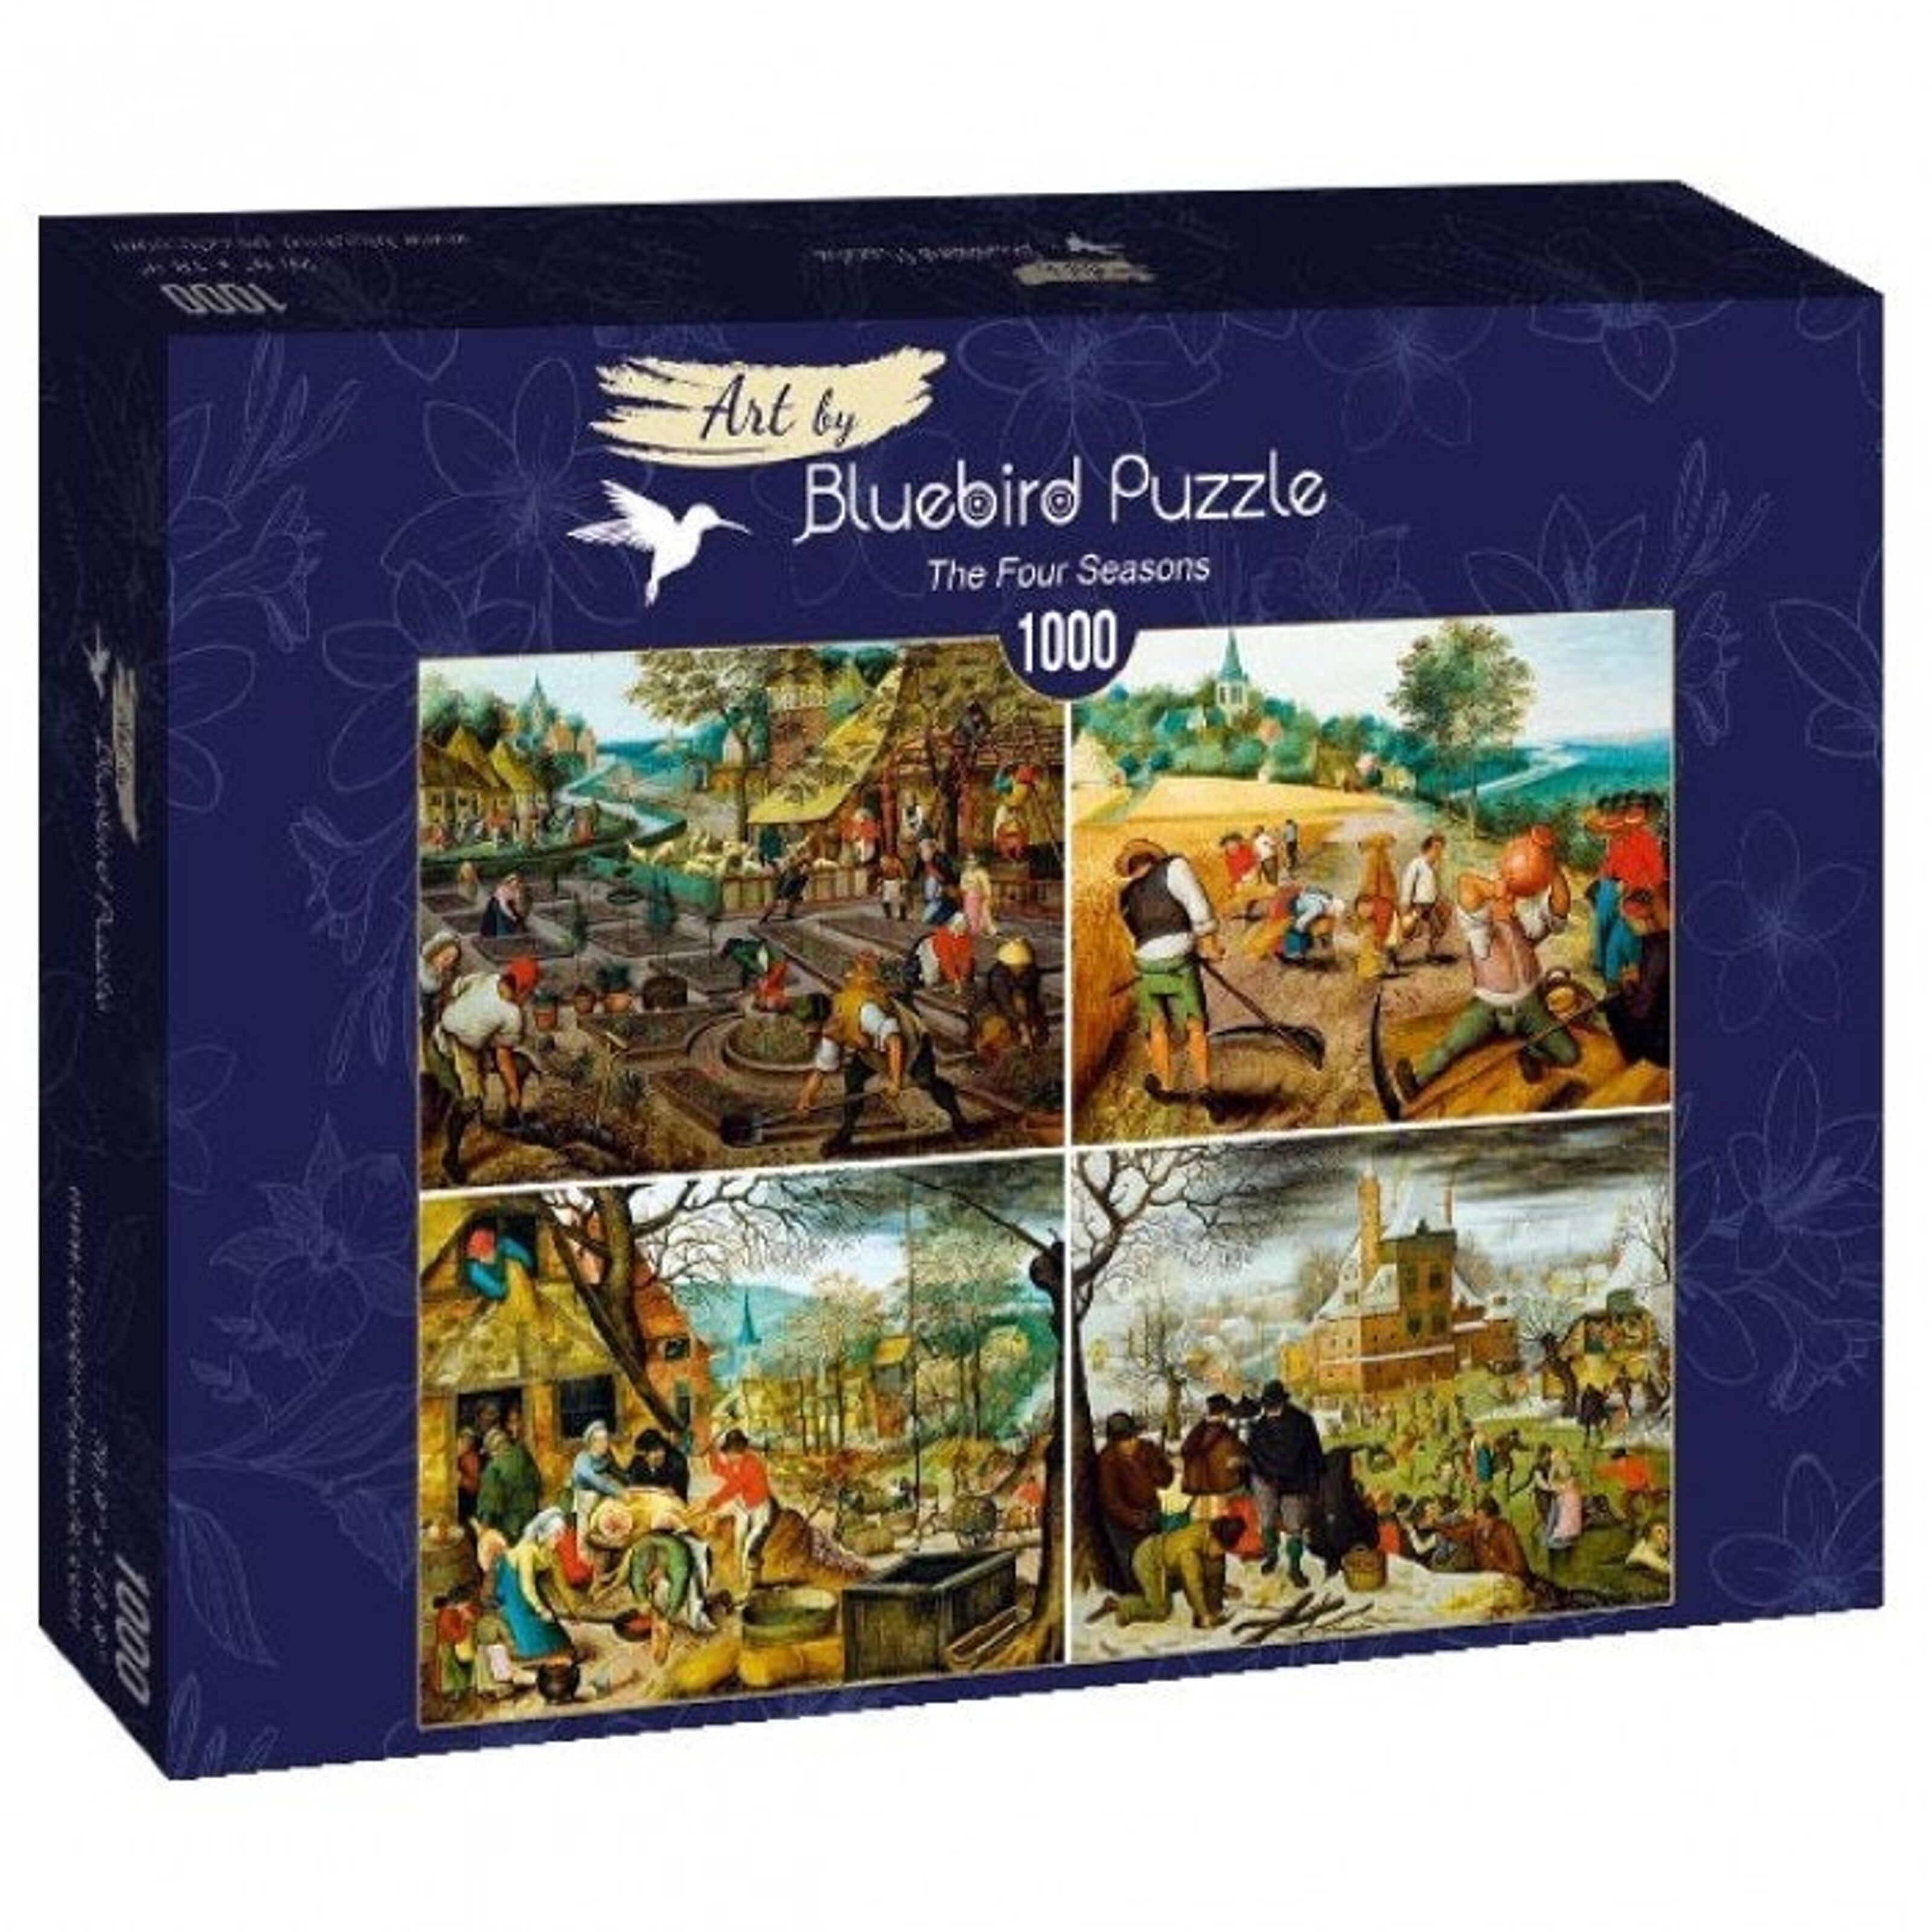 Puzzle 1000 pièces – Notre Dame Collage Educa : King Jouet, Puzzle